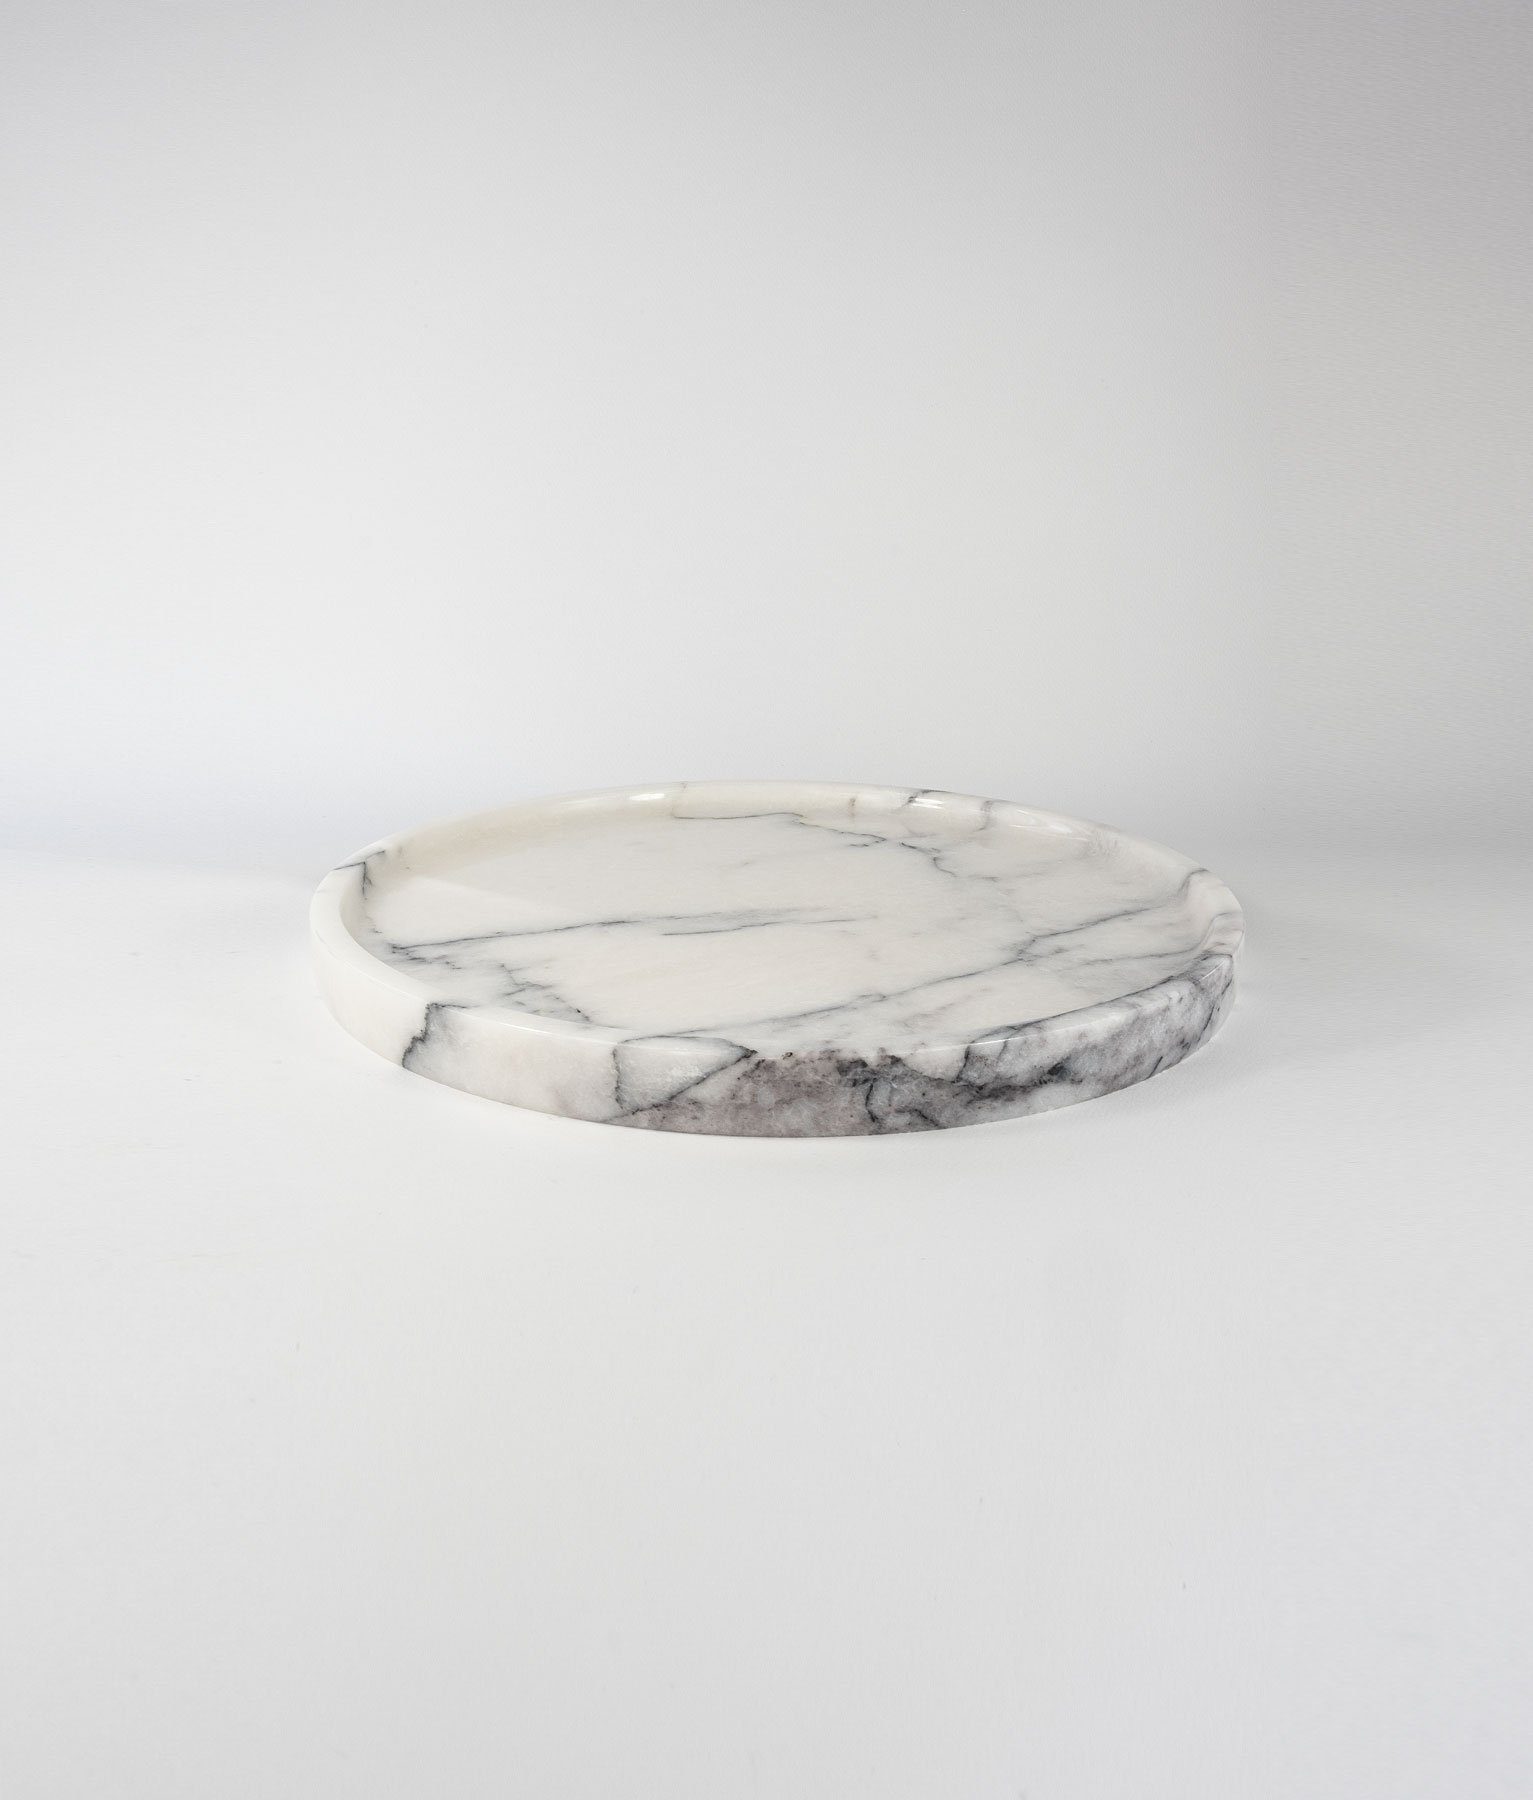 D'arte Stone Servierplatte TOLMIN Servierplatte aus Marmor